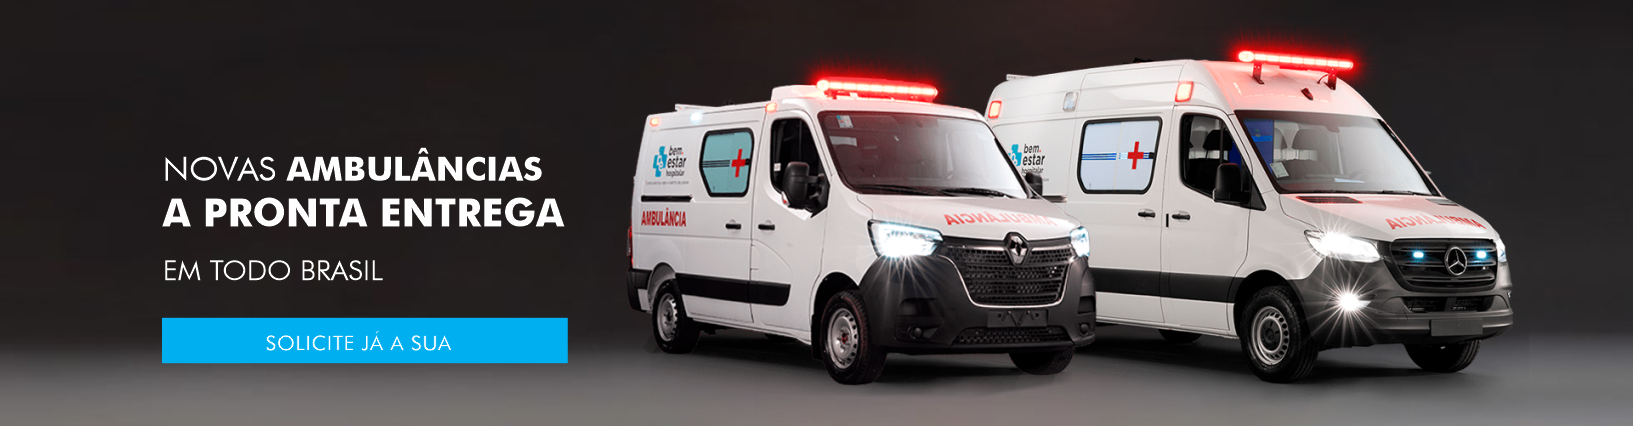 banner ambulancia nova 